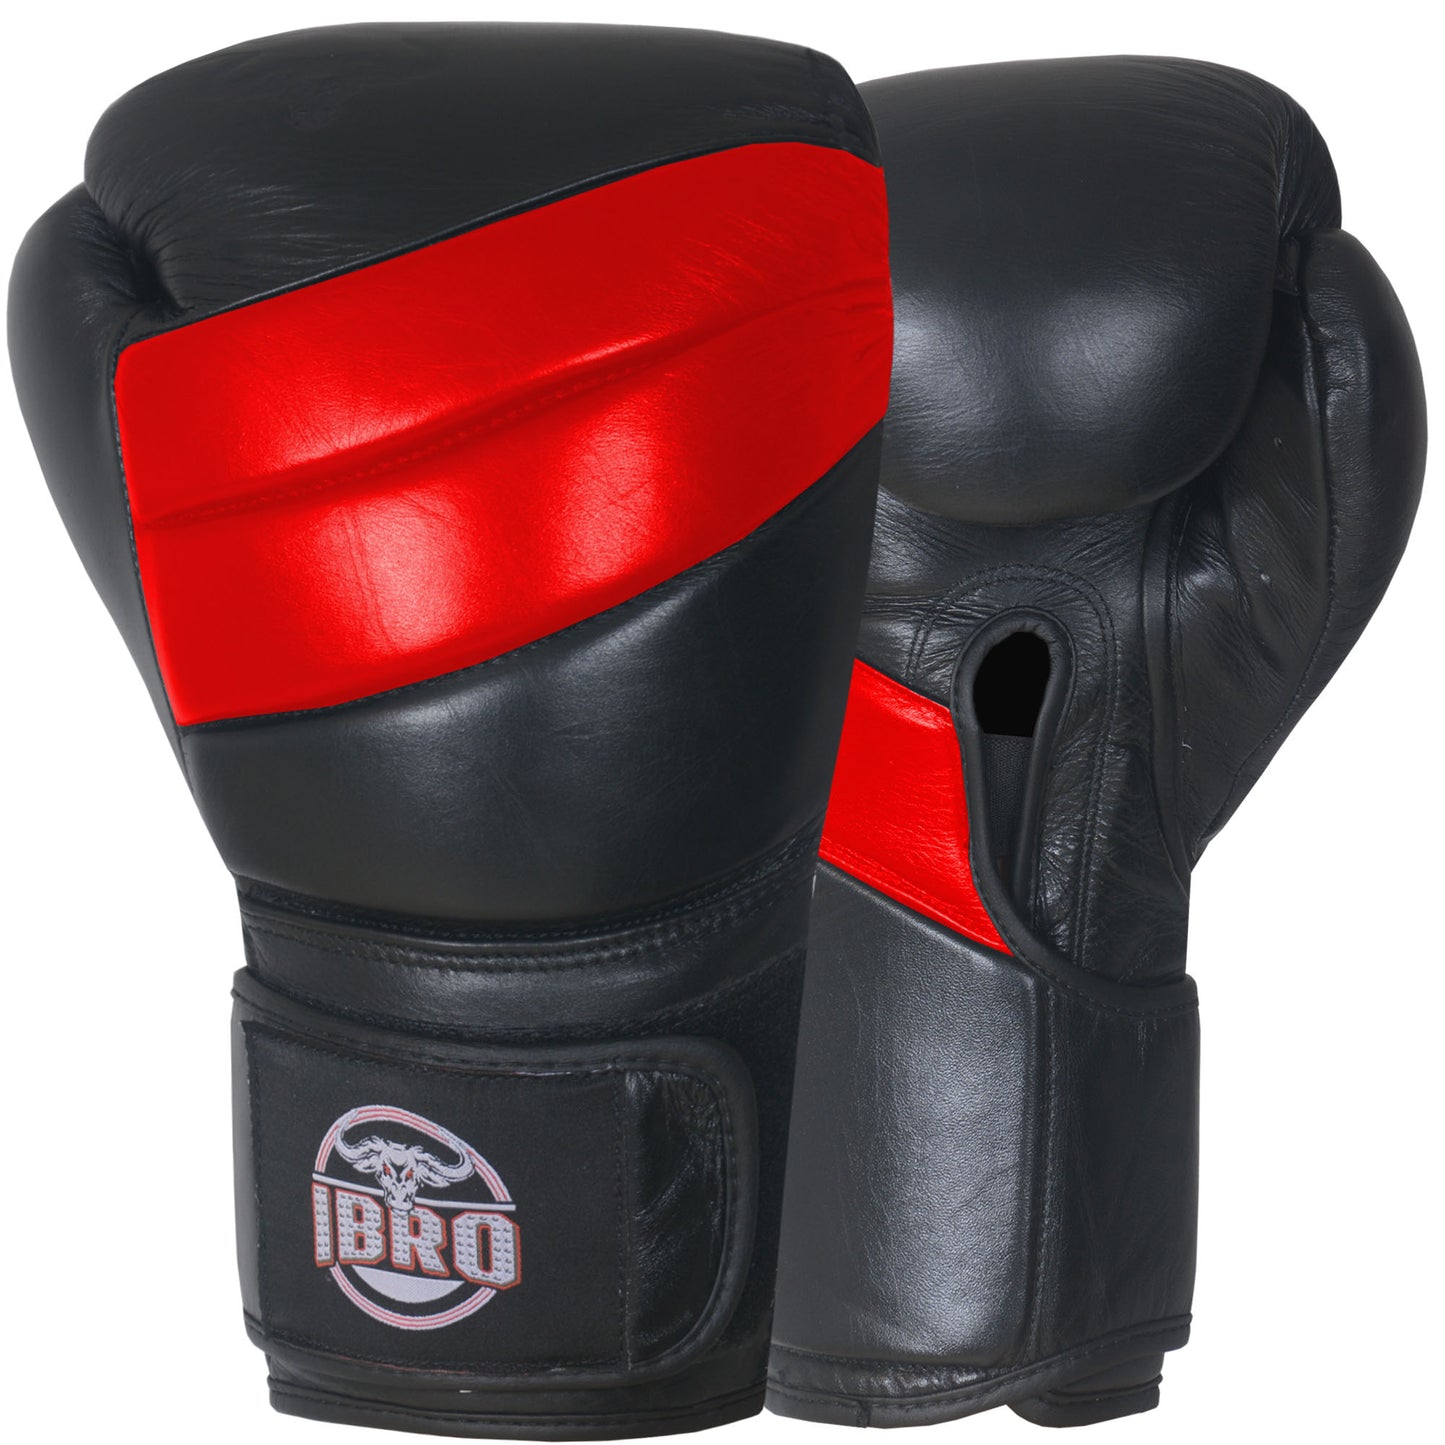 IBRO Iconic PRO Leather Boxing Training Gloves BlackRed